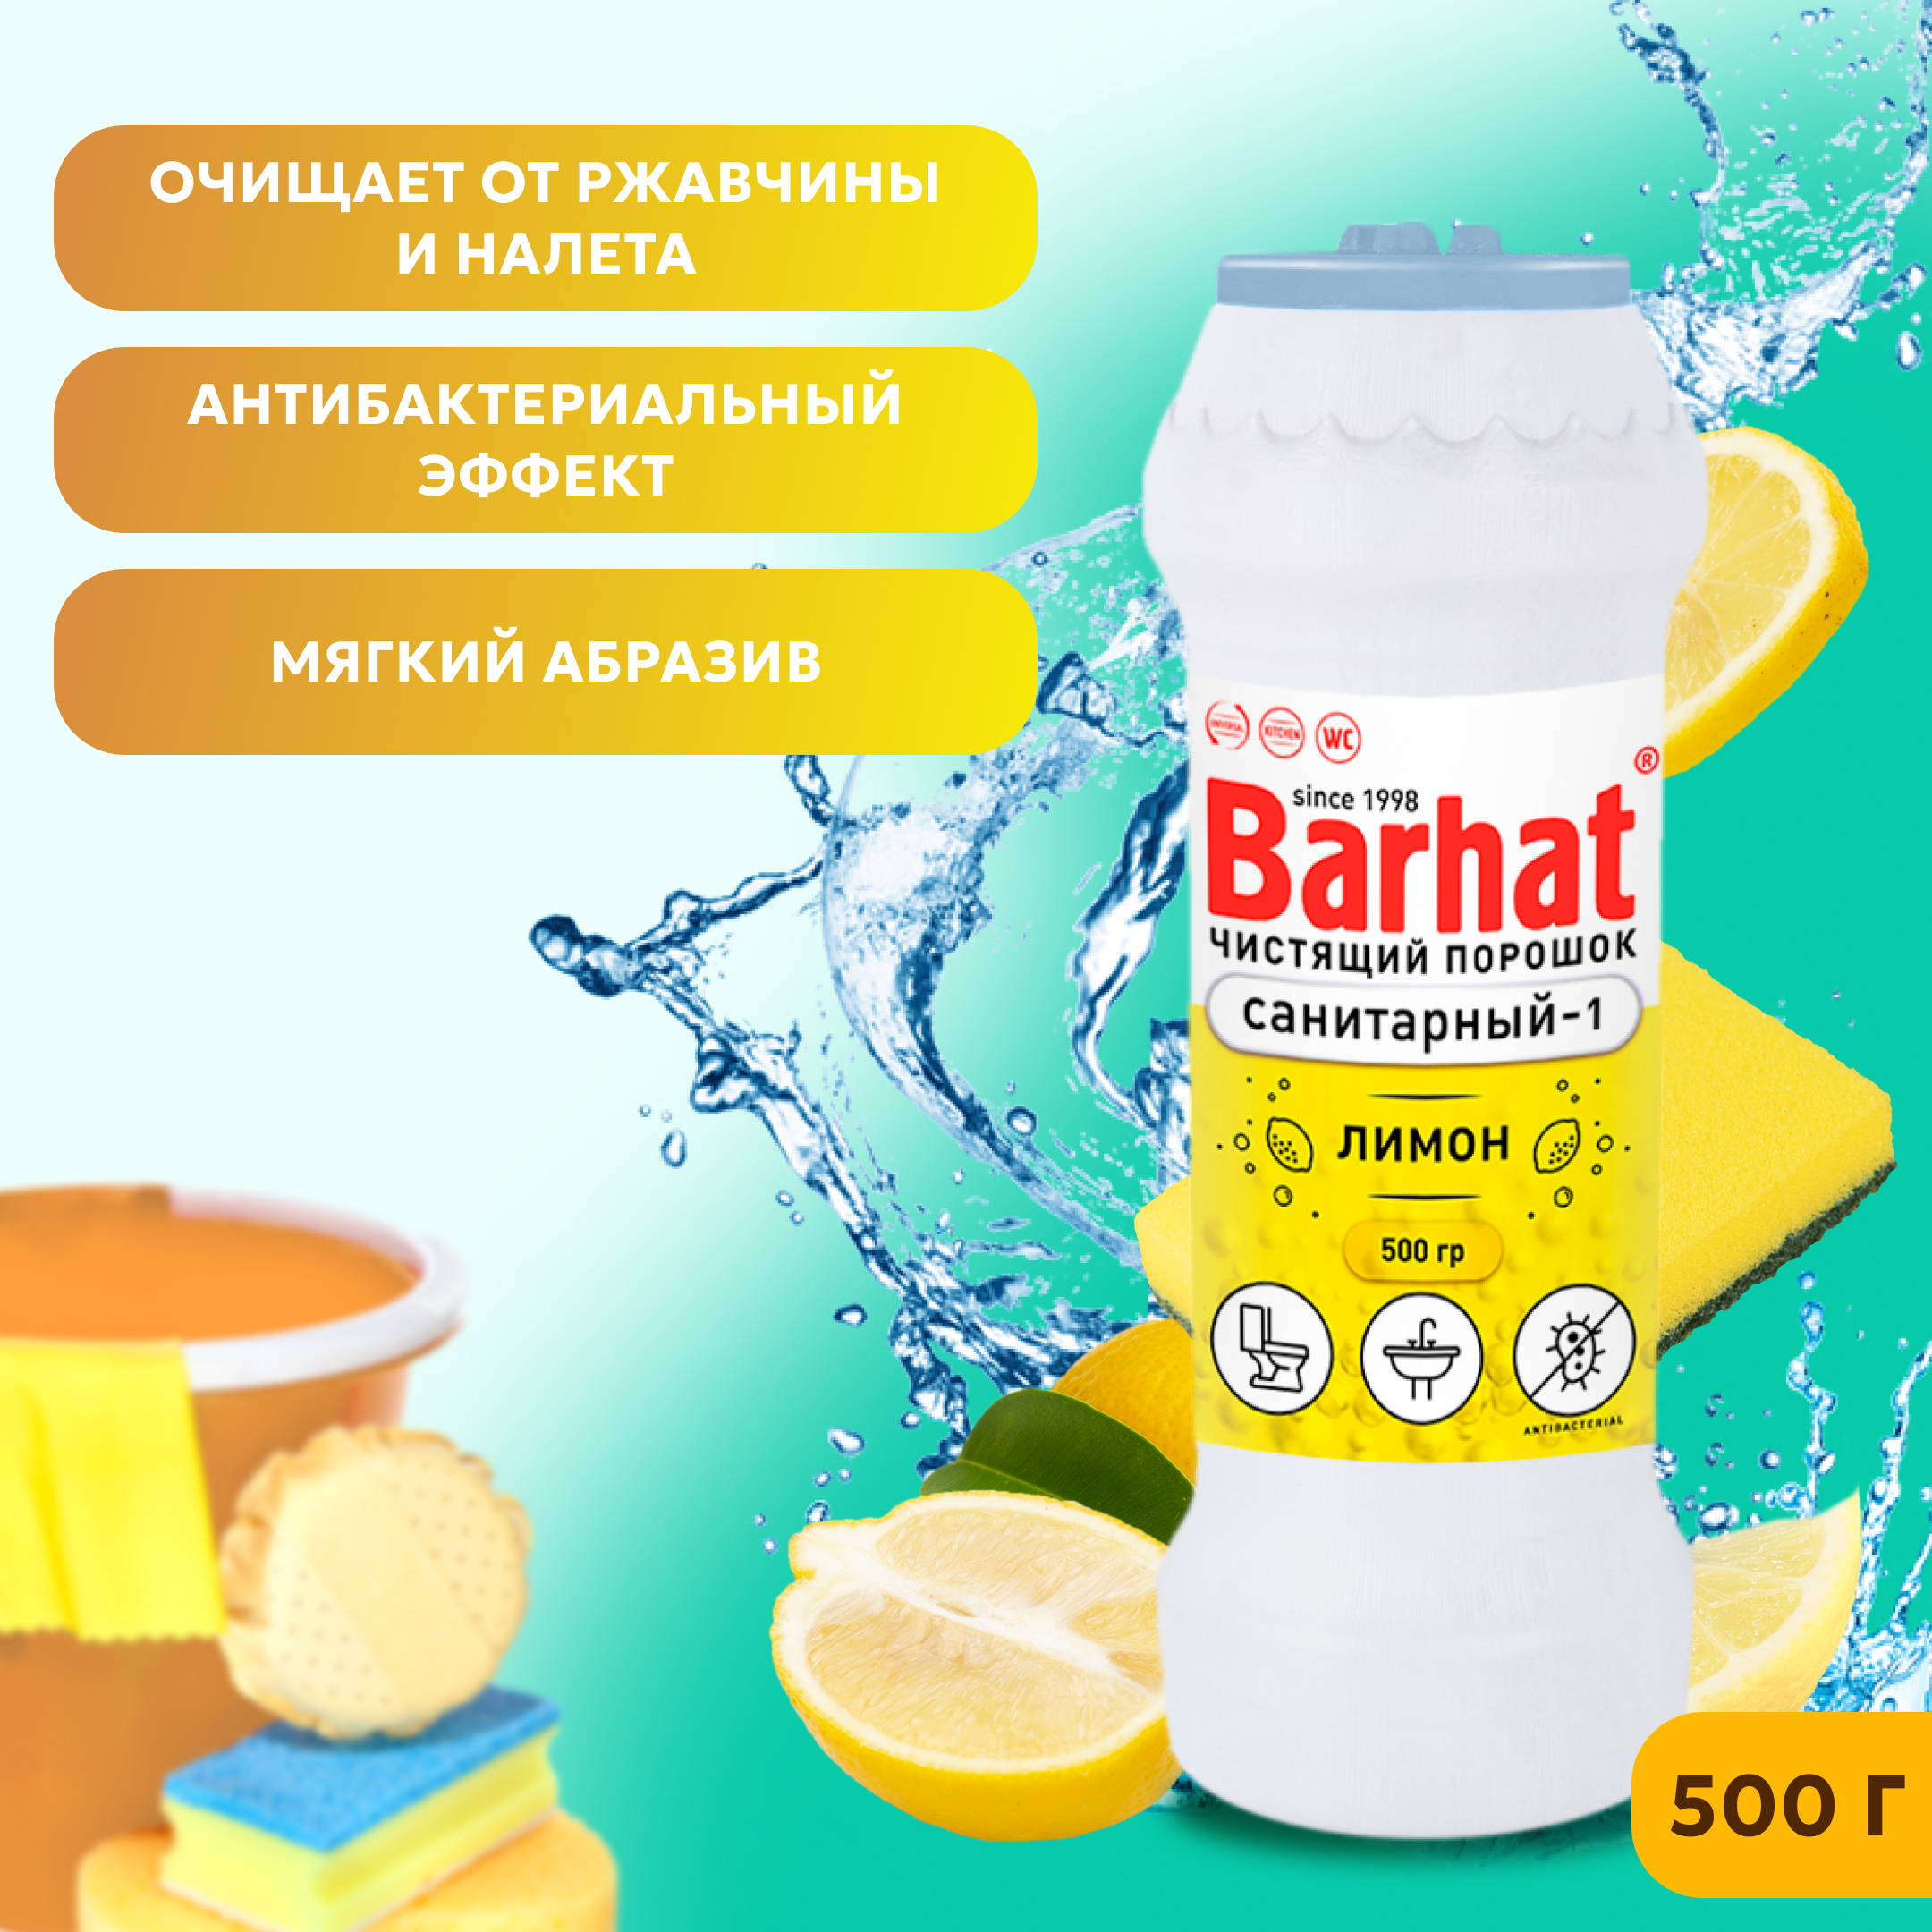 БАРХАТ САНИТАРНЫЙ-1 500г.лимон,чистящий и дезинфицирующий порошок